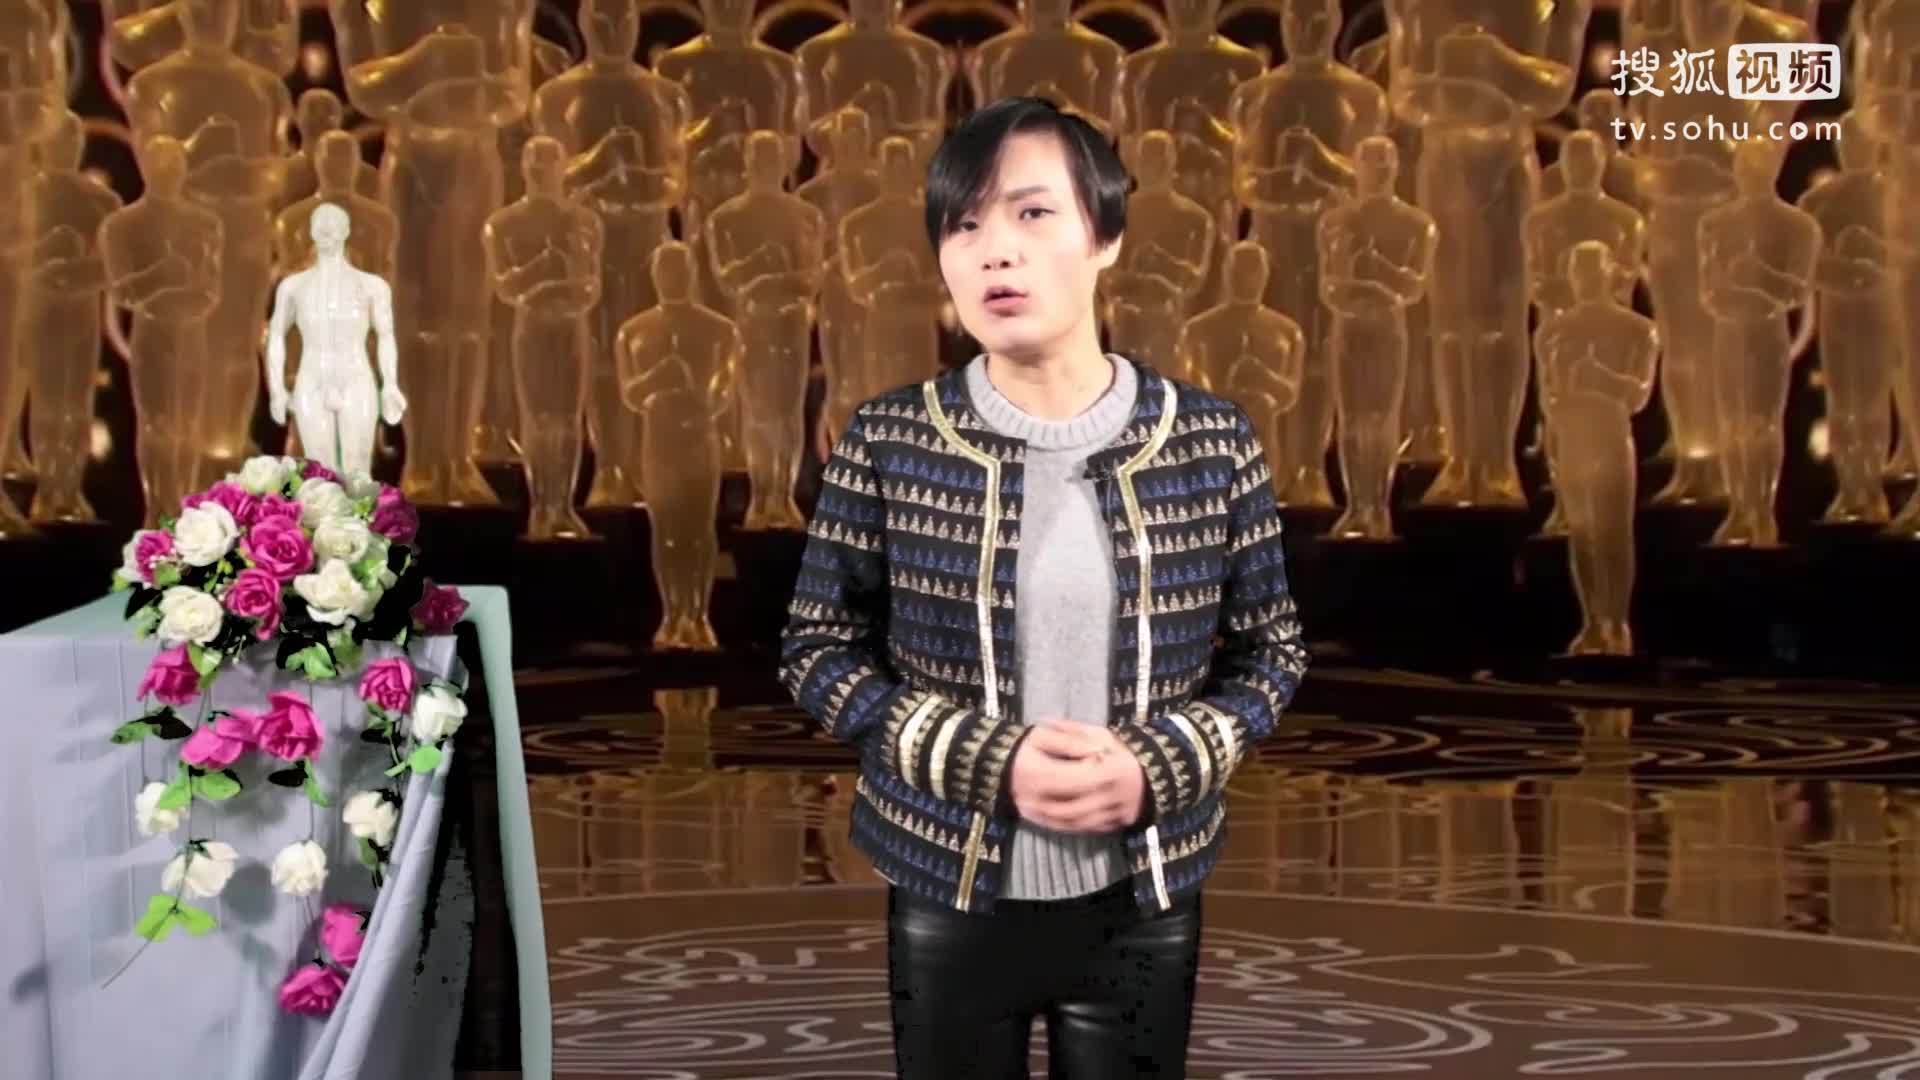 【明日新闻19】周杰伦VS汪峰 谁是2015最热新闻